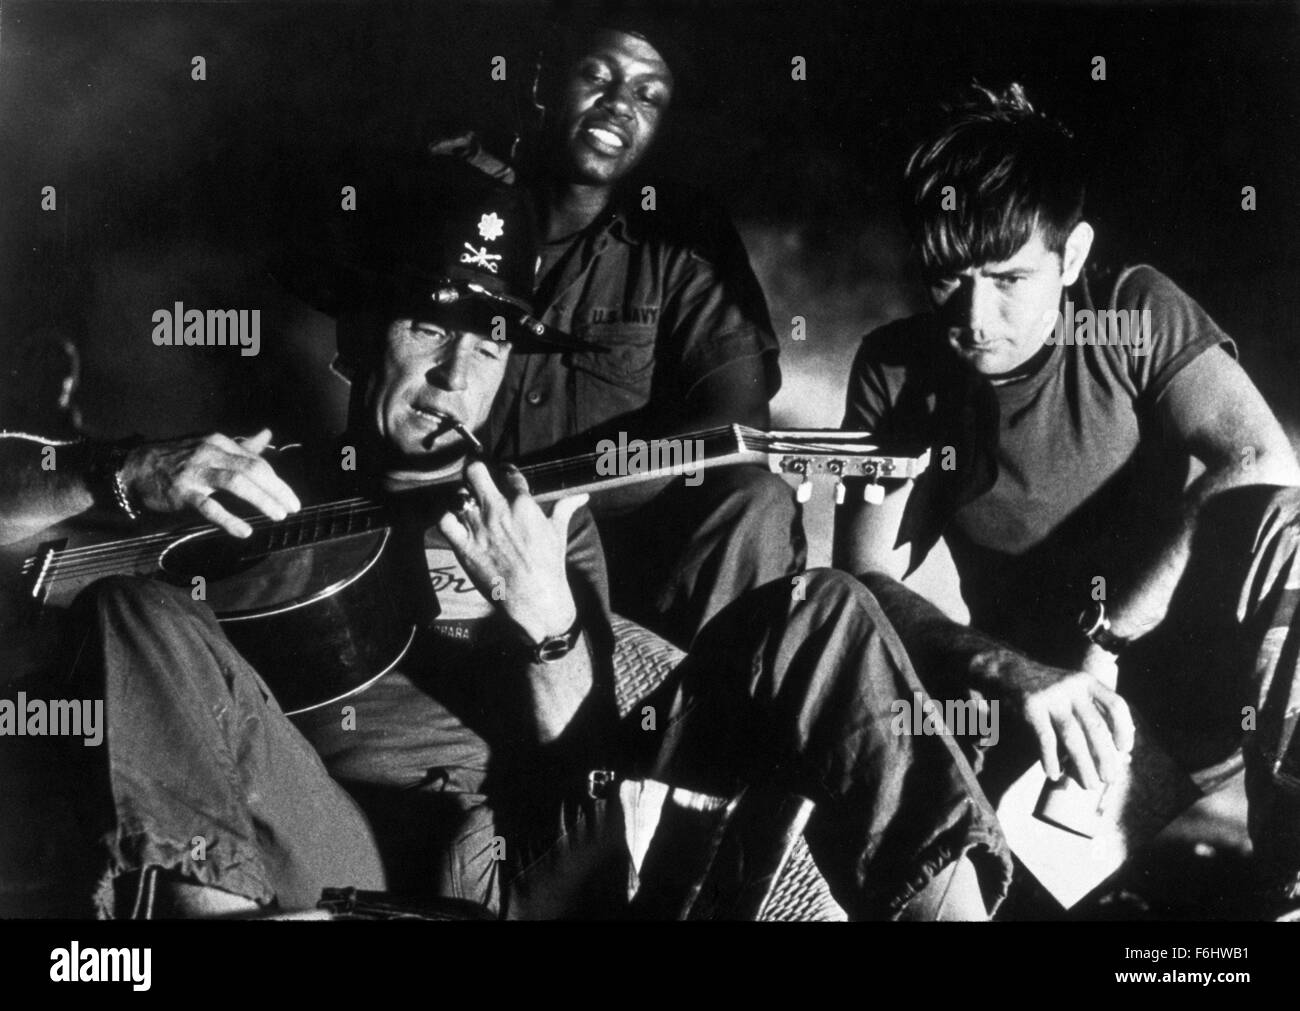 1979, il titolo del film: Apocalypse Now, Direttore: francis ford coppola, Studio: UA, nella foto: Francis Ford Coppola e Robert Duvall, ALBERT HALL. (Credito Immagine: SNAP) Foto Stock